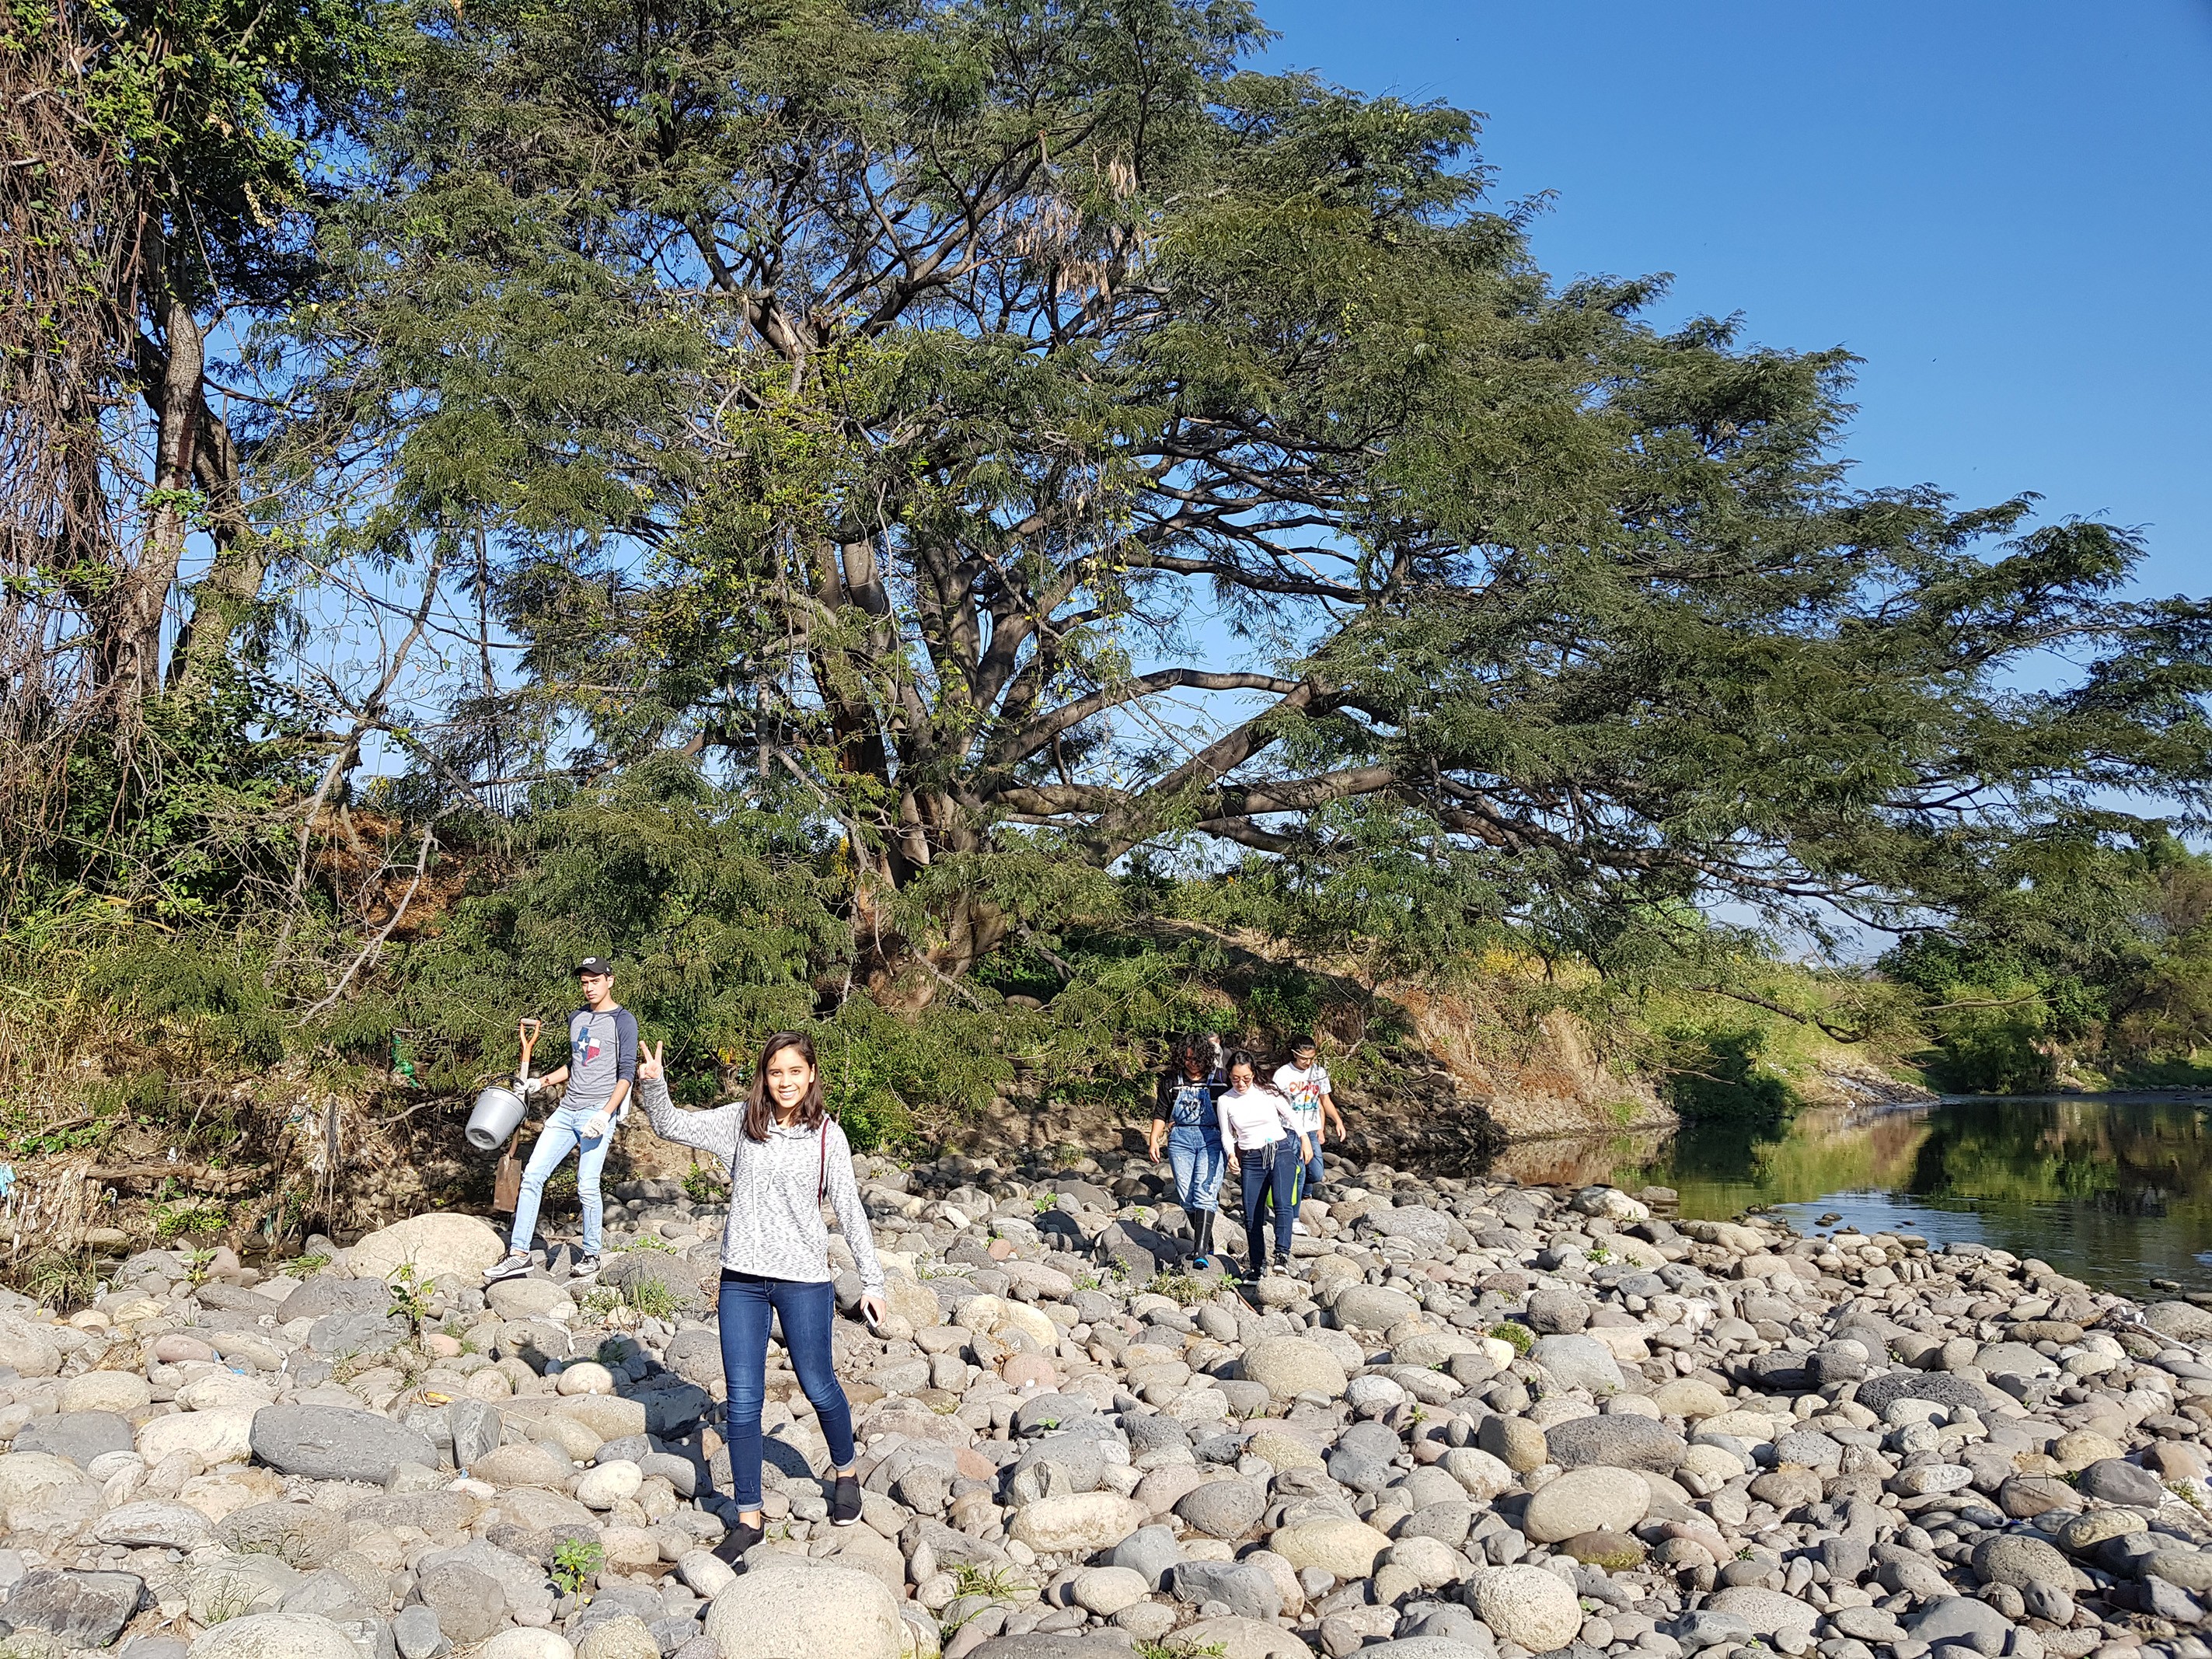 Voluntarios limpian el río Apatlaco